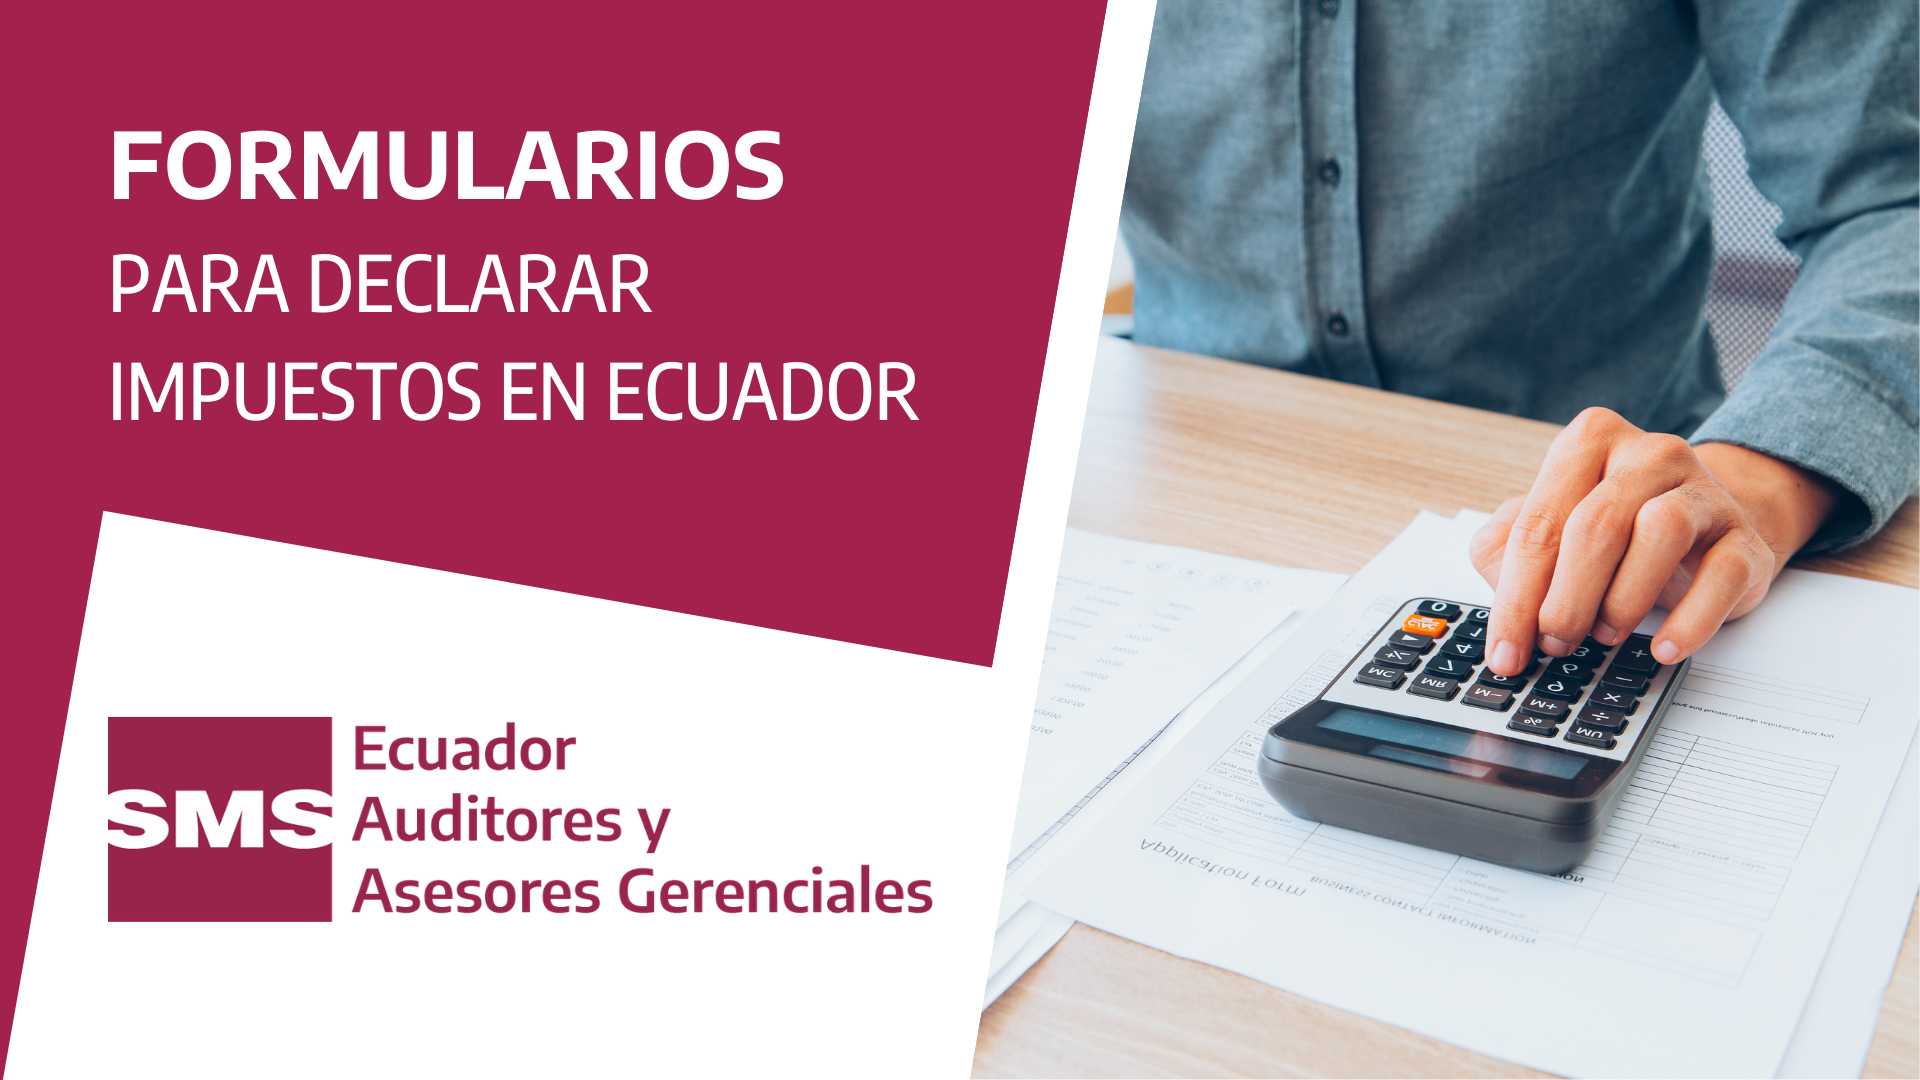 Formularios para declarar impuesto en Ecuador más instructivos